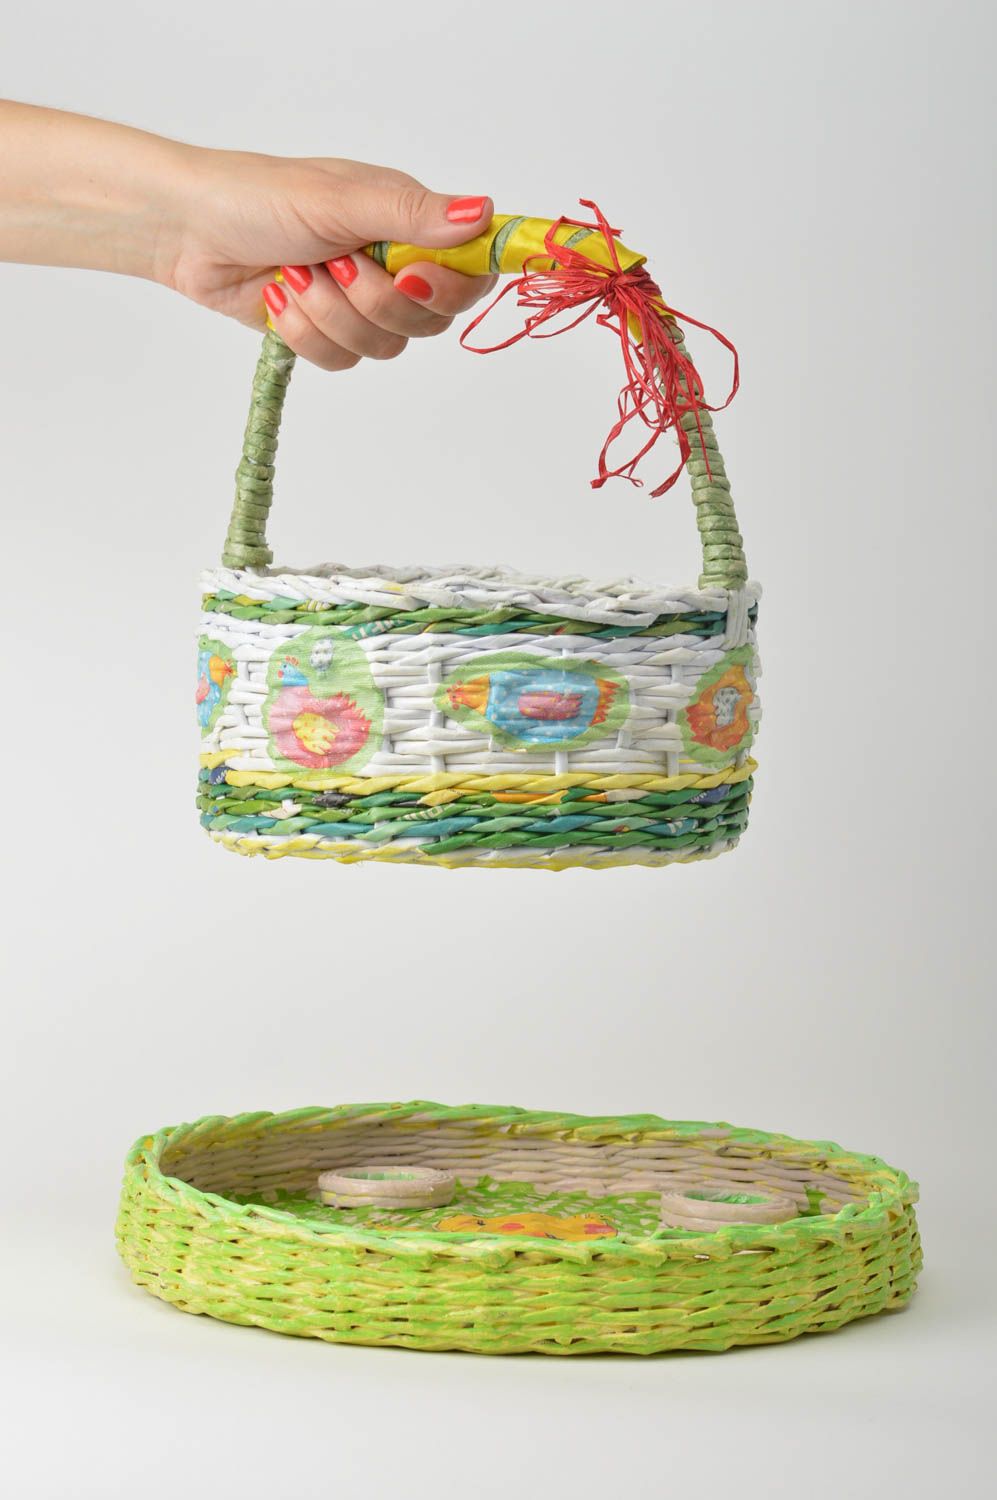 Плетеная корзинка ручной работы пасхальная корзина с подносом корзина из бумаги фото 1